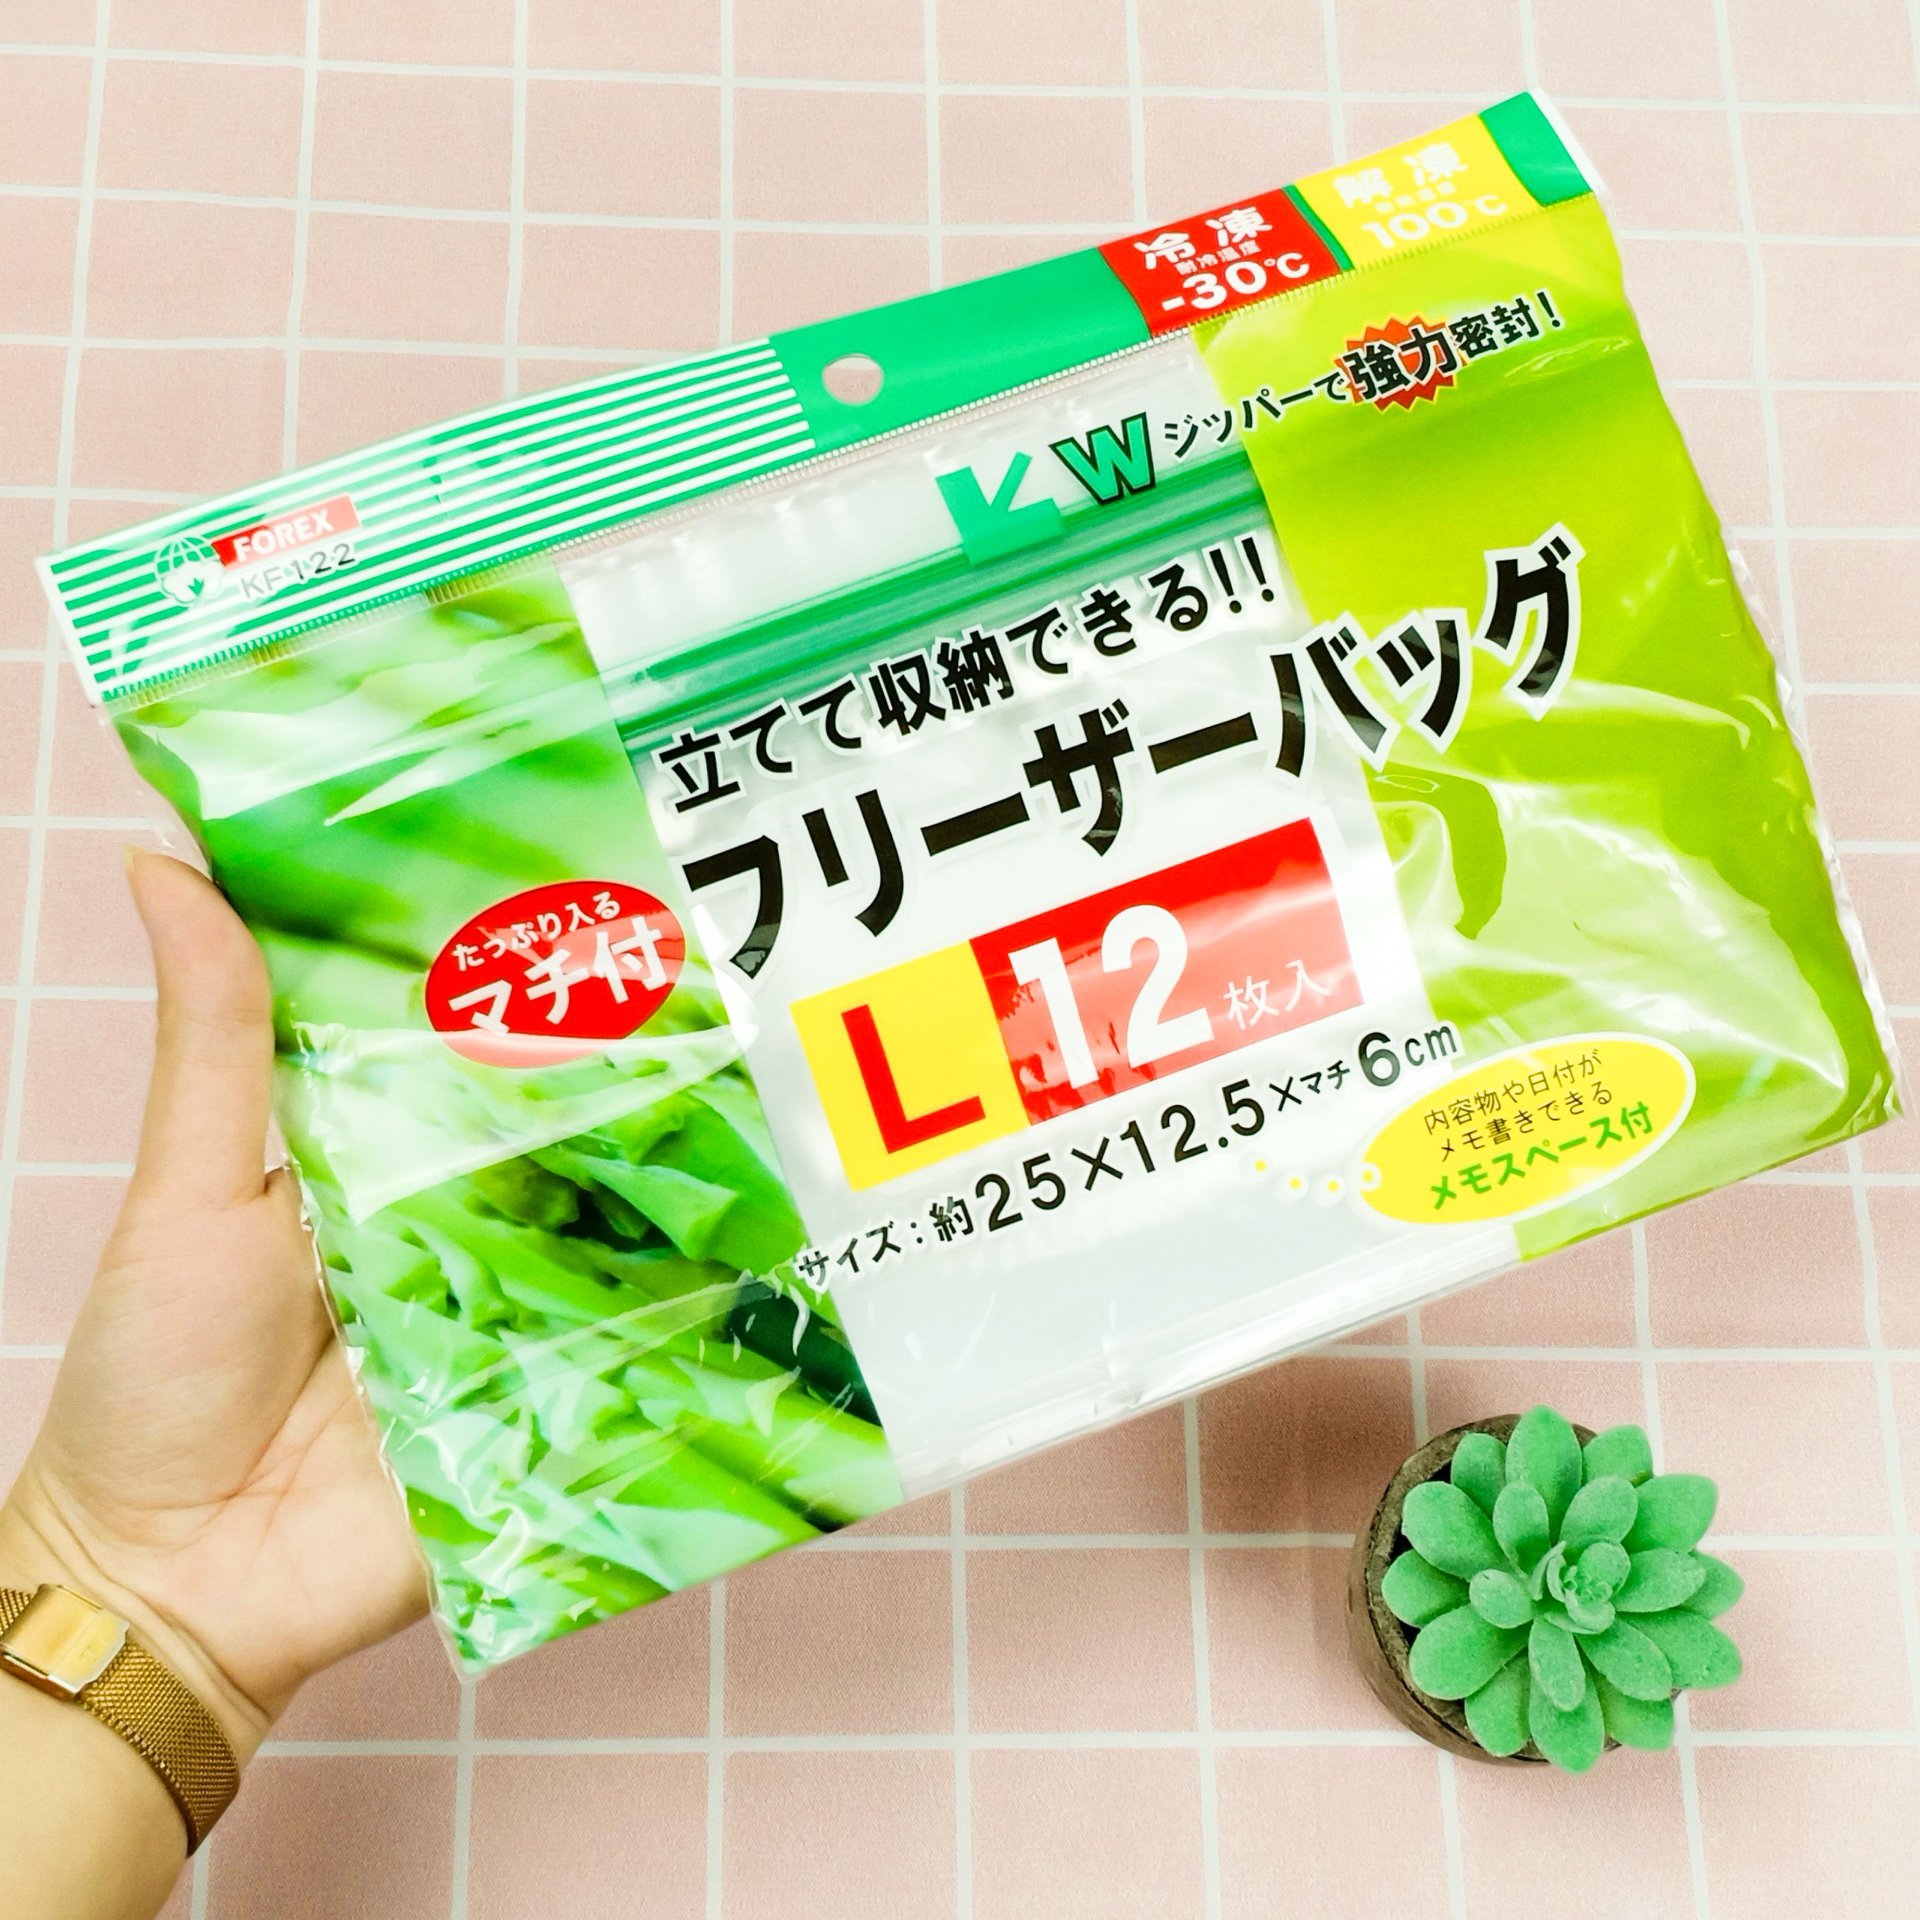 Set túi Zip bảo quản thực phẩm - Nội địa Nhật Bản